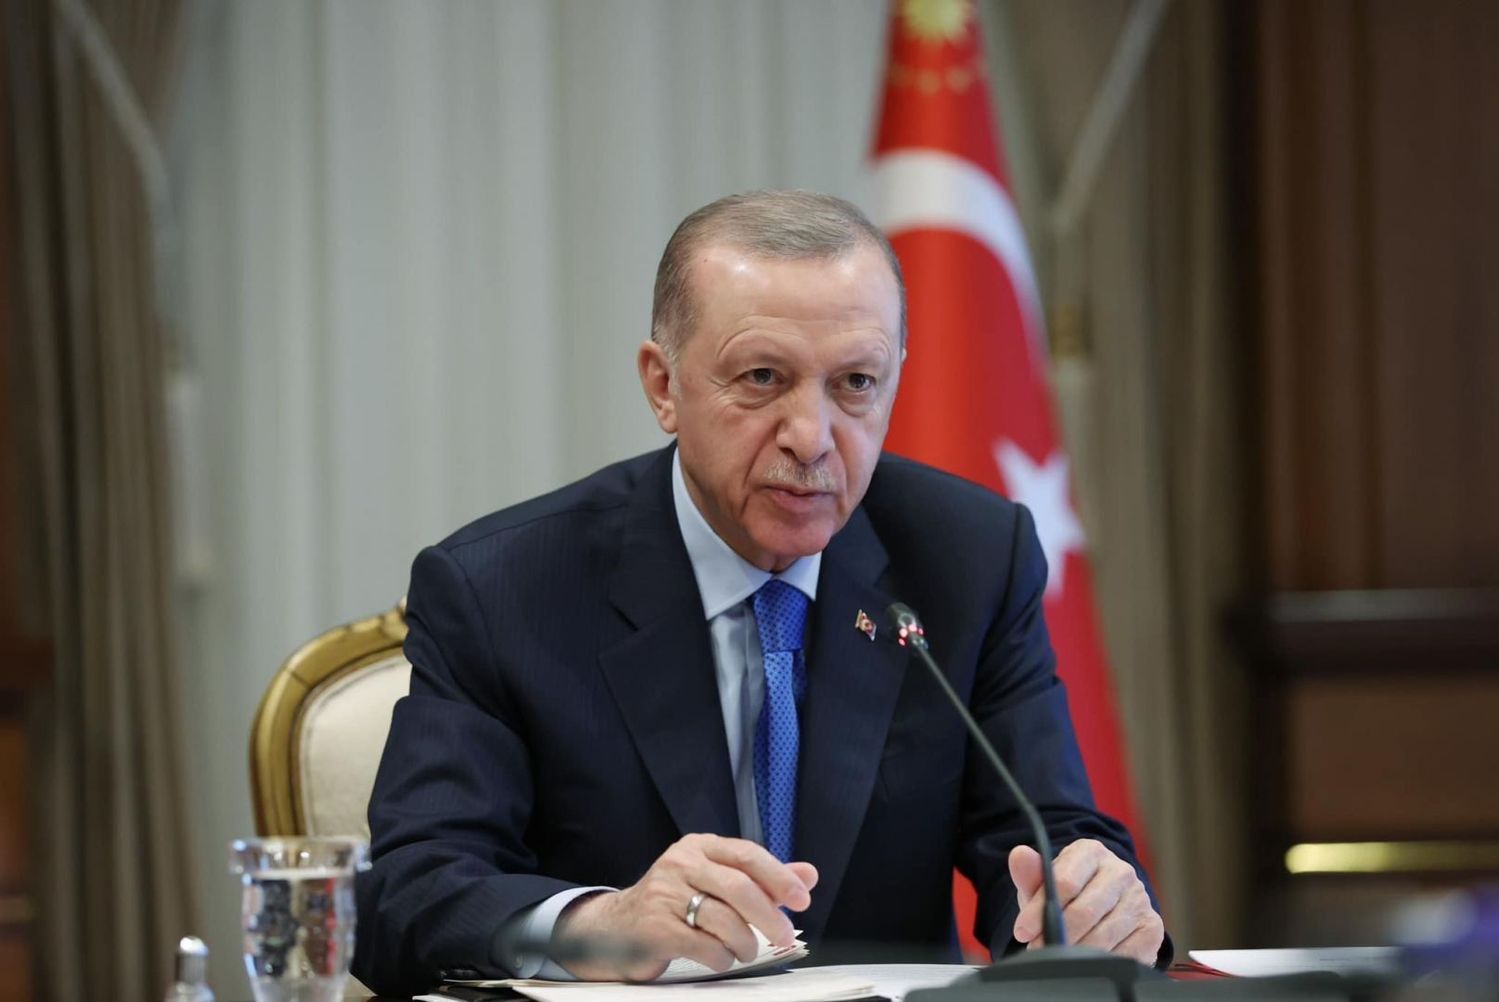 Türkiye: Эрдоган провел экстренное заседание из-за угрозы госпереворота